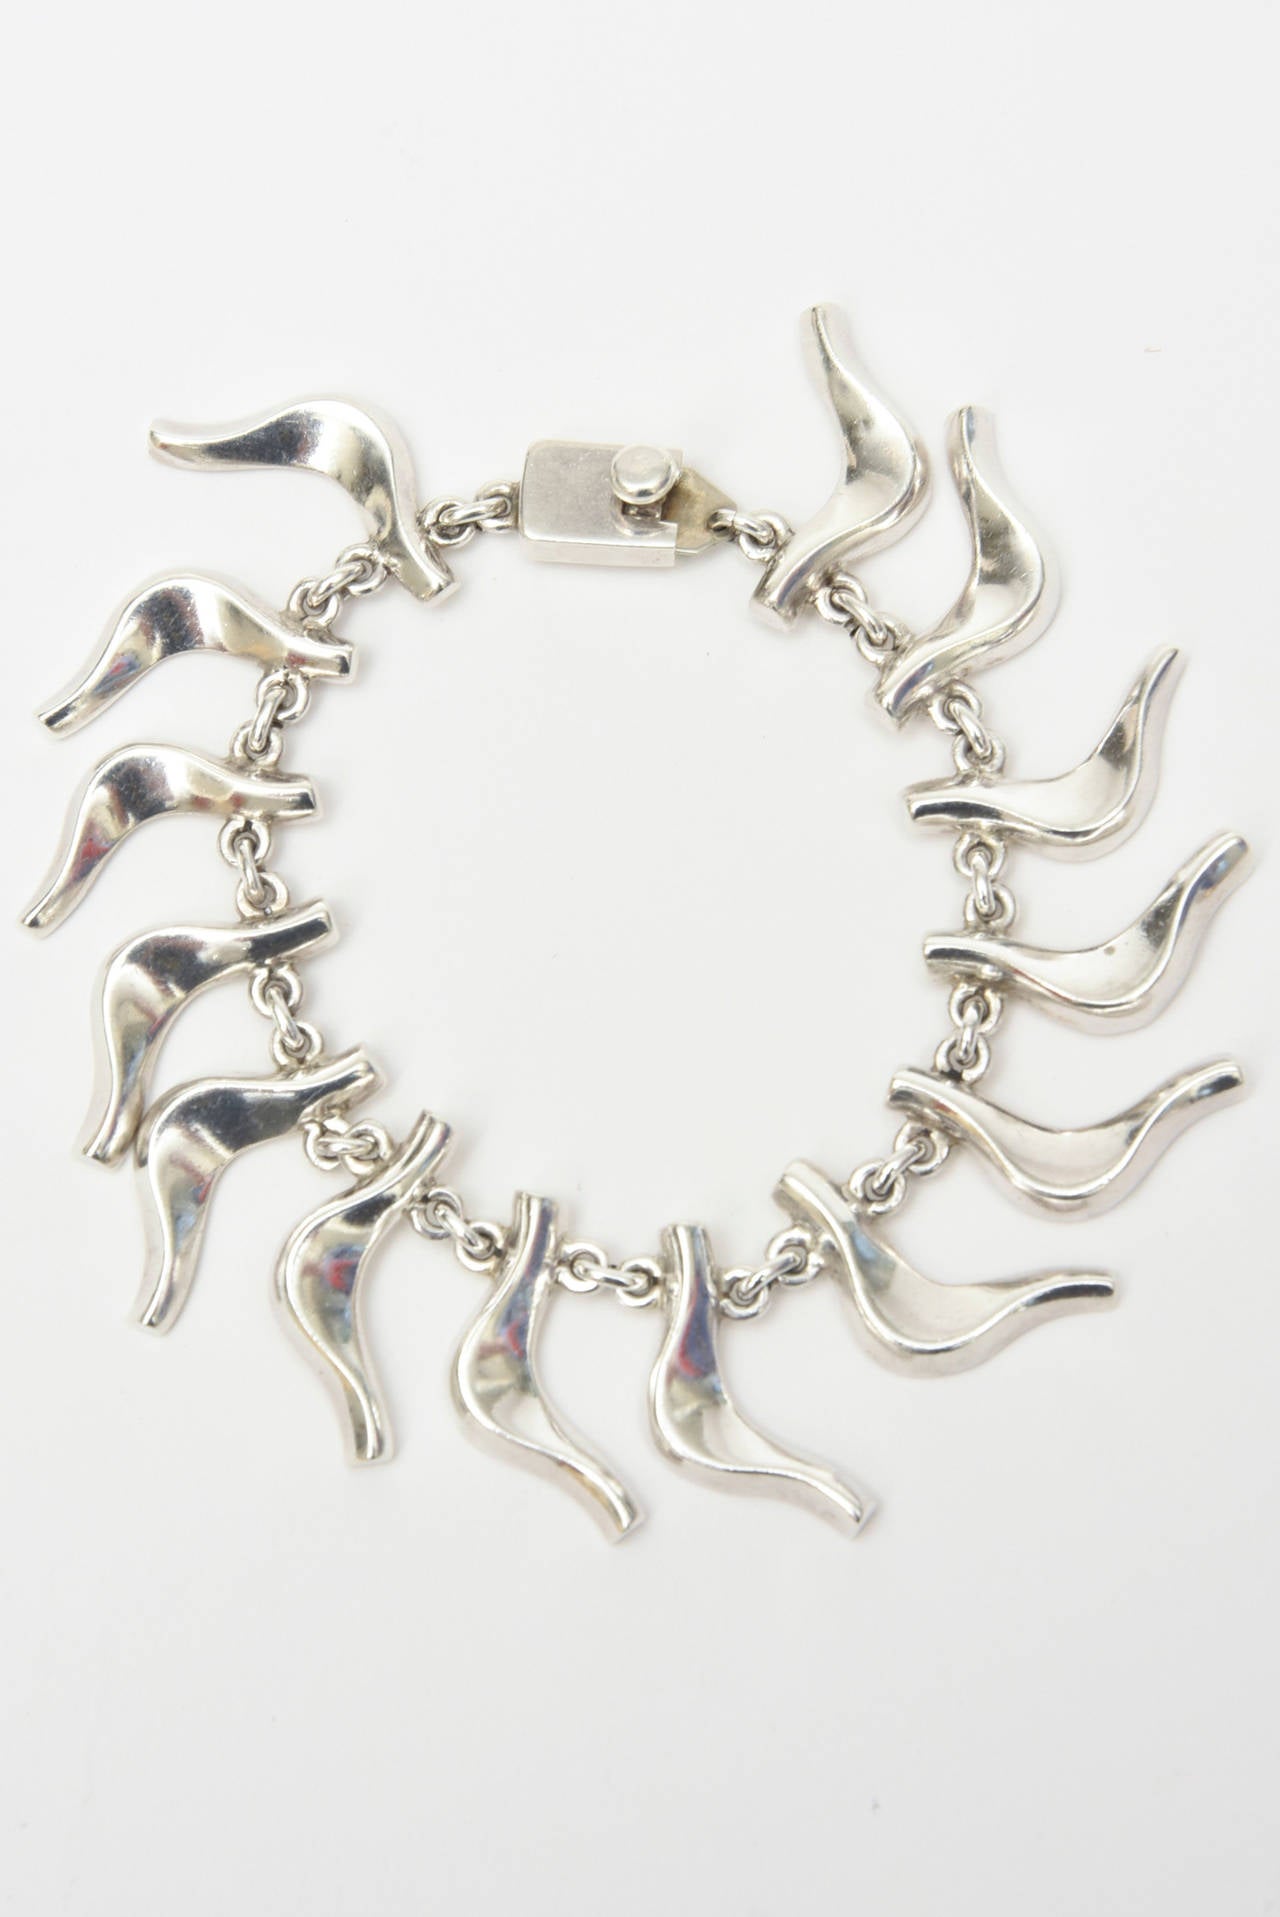 Modernist Vintage Sterling Silver Signed Collar Necklace and Charm Bracelet Set  For Sale